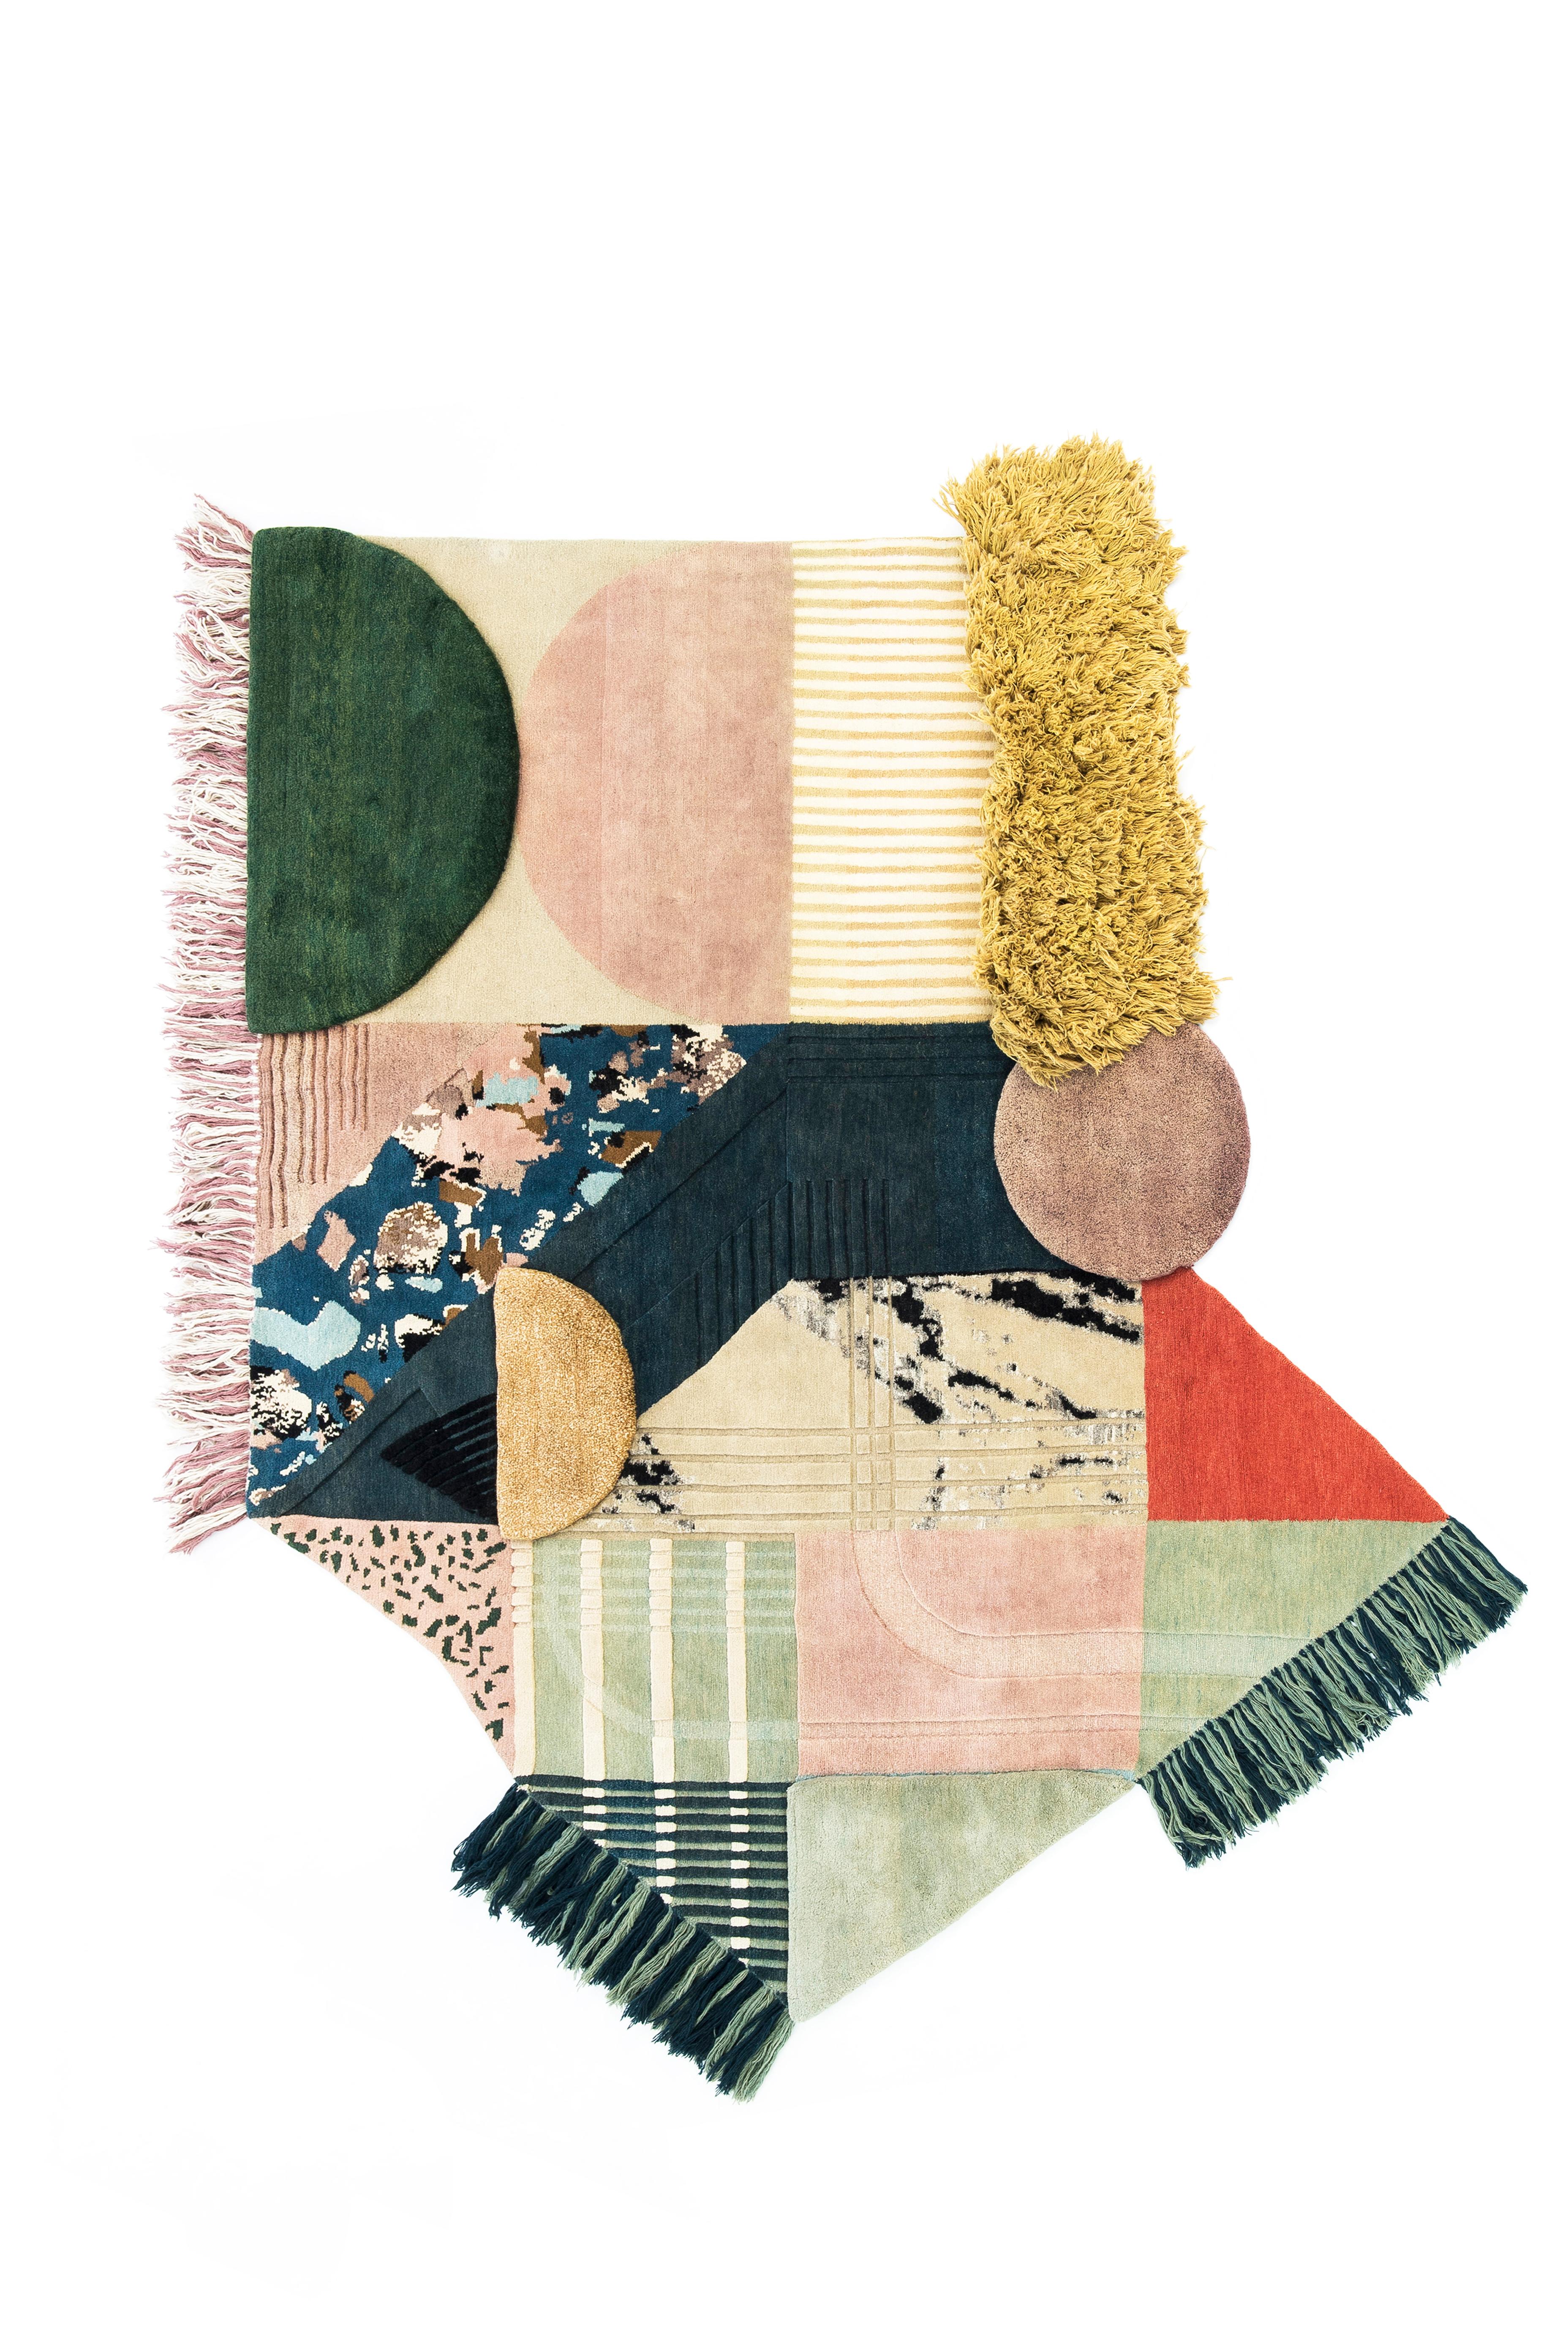 Nr. 256 Medley Handgeknüpfter Teppich von Lyk Carpet
Abmessungen: B 250 x L 280 cm.
MATERIALIEN: 100% tibetische Hochlandwolle, handgekämmte und handgesponnene Schurwolle, natürliche pflanzlich gefärbte Wolle, 100 Knoten pro